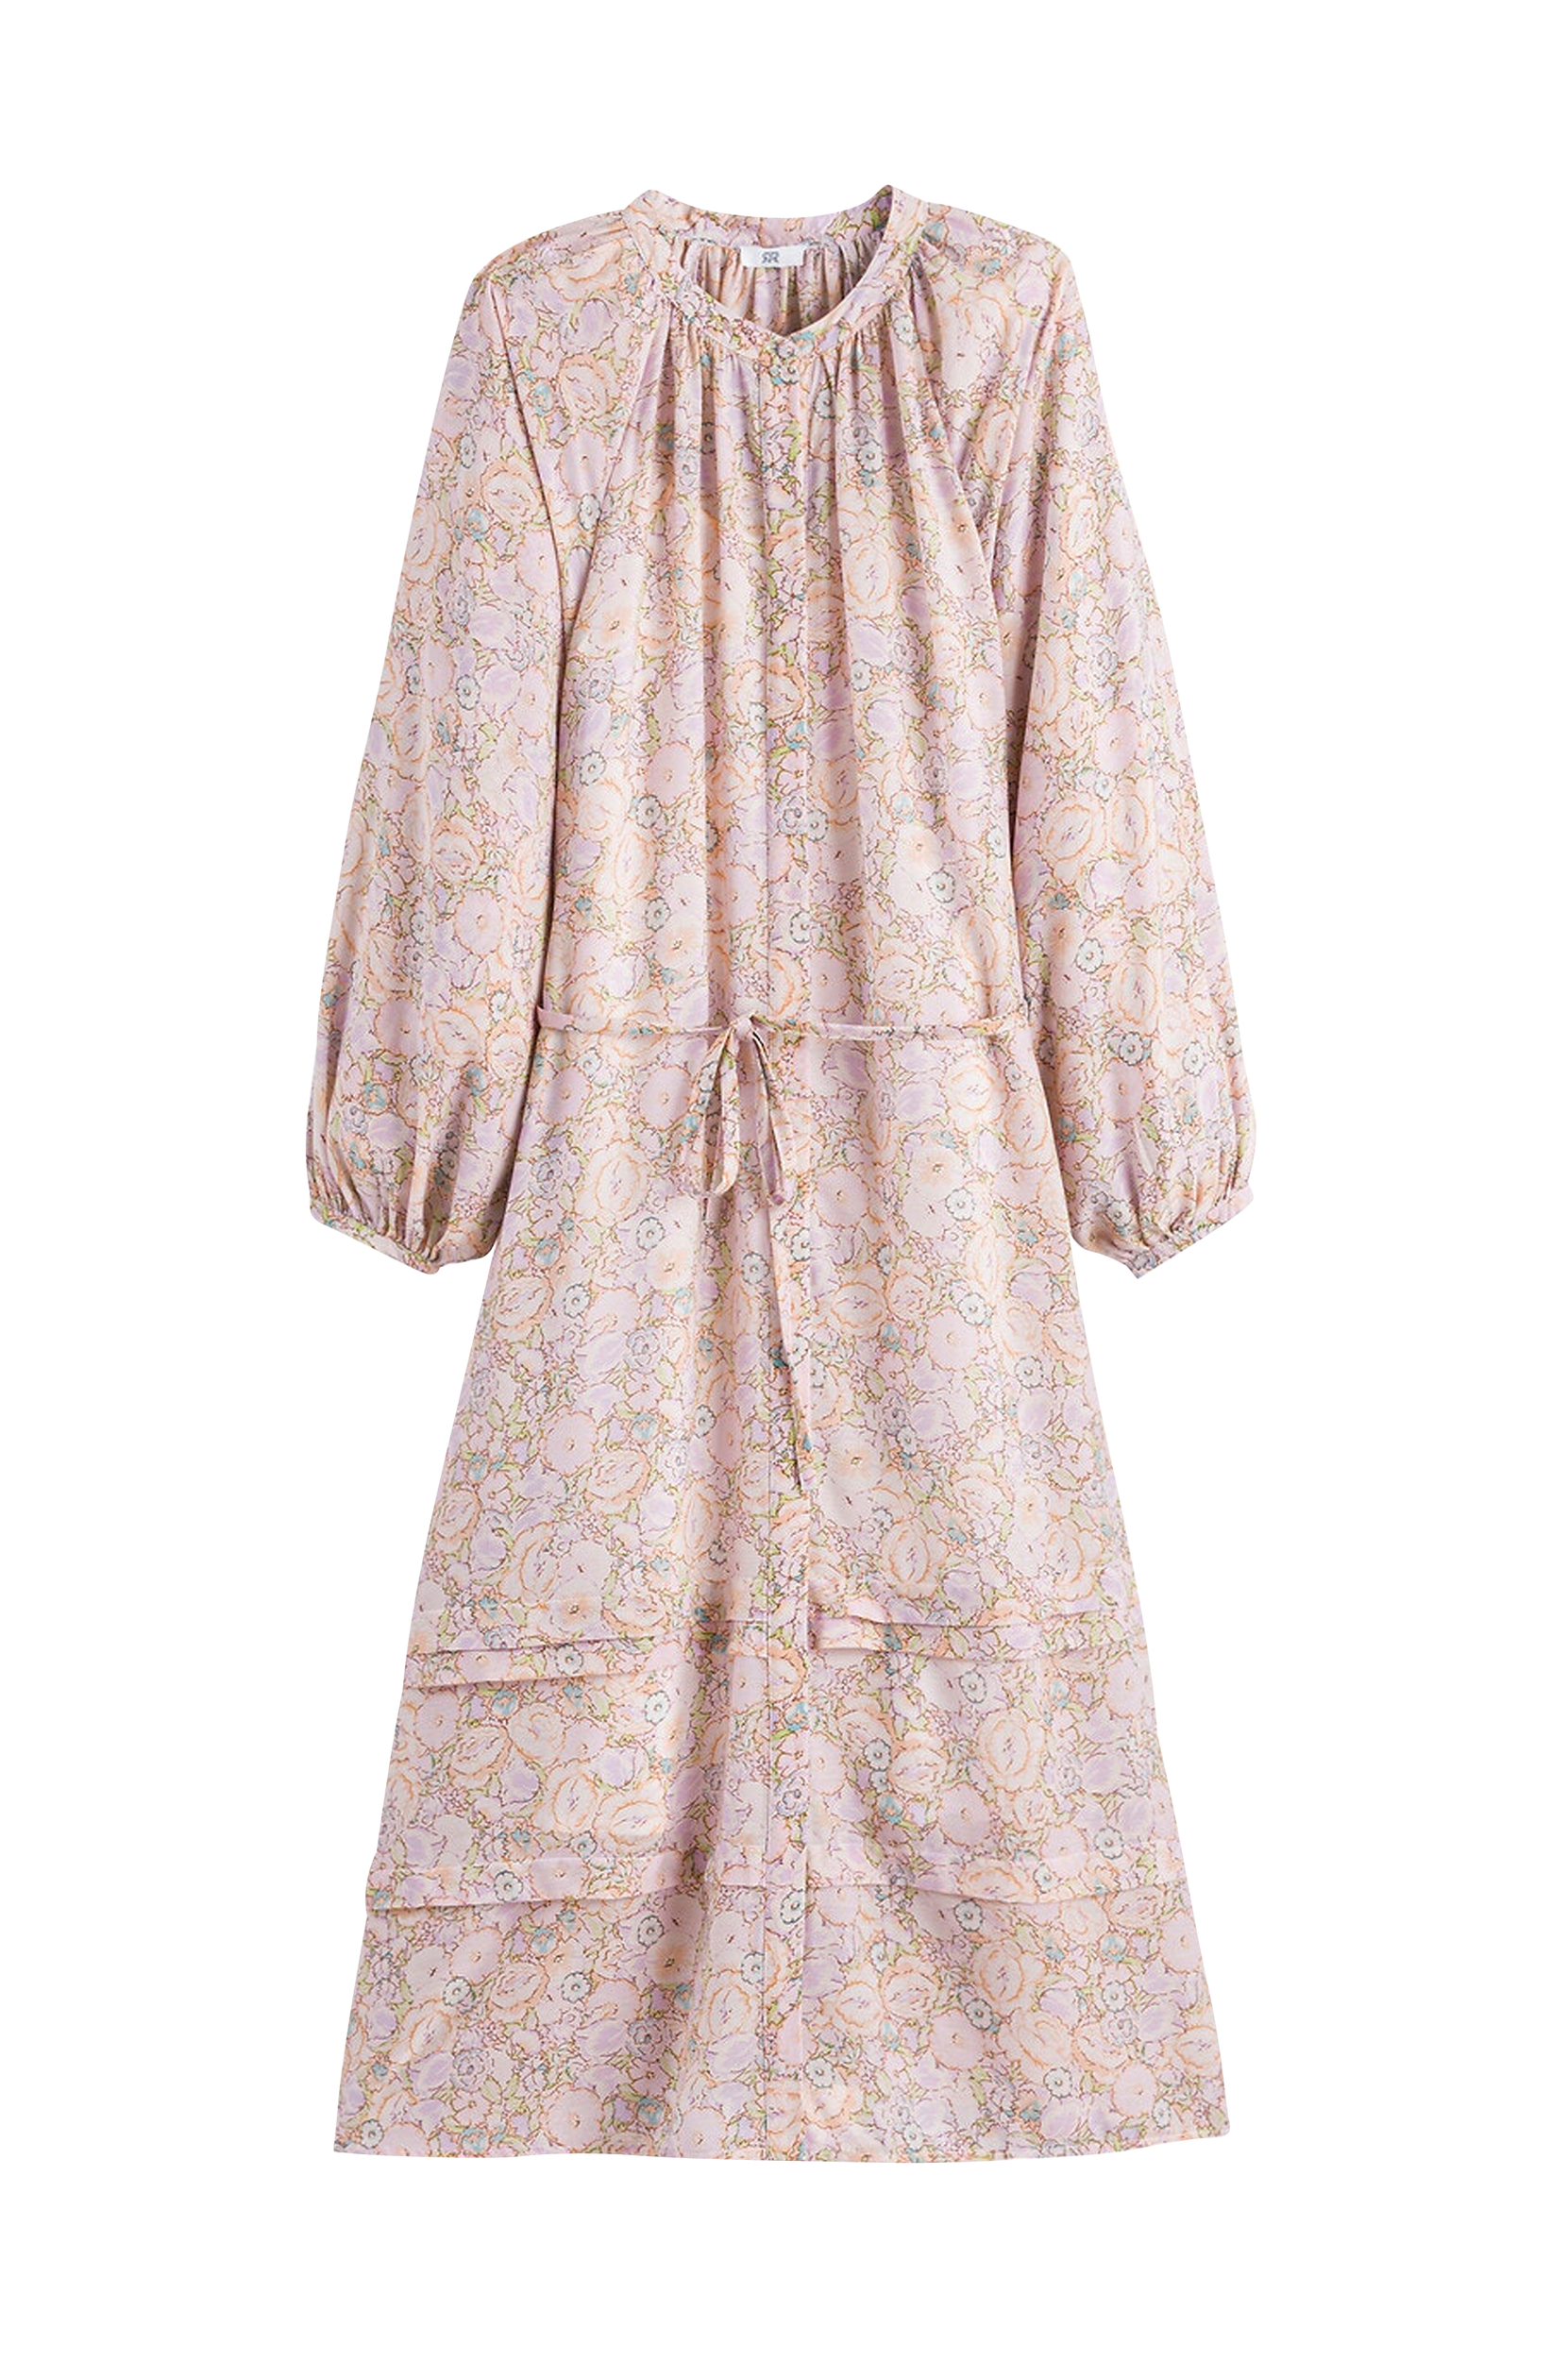 Søg craft regeringstid La Redoute - Kjole - Rosa - 40 - Kjoler - Tøj til kvinder (30773491)